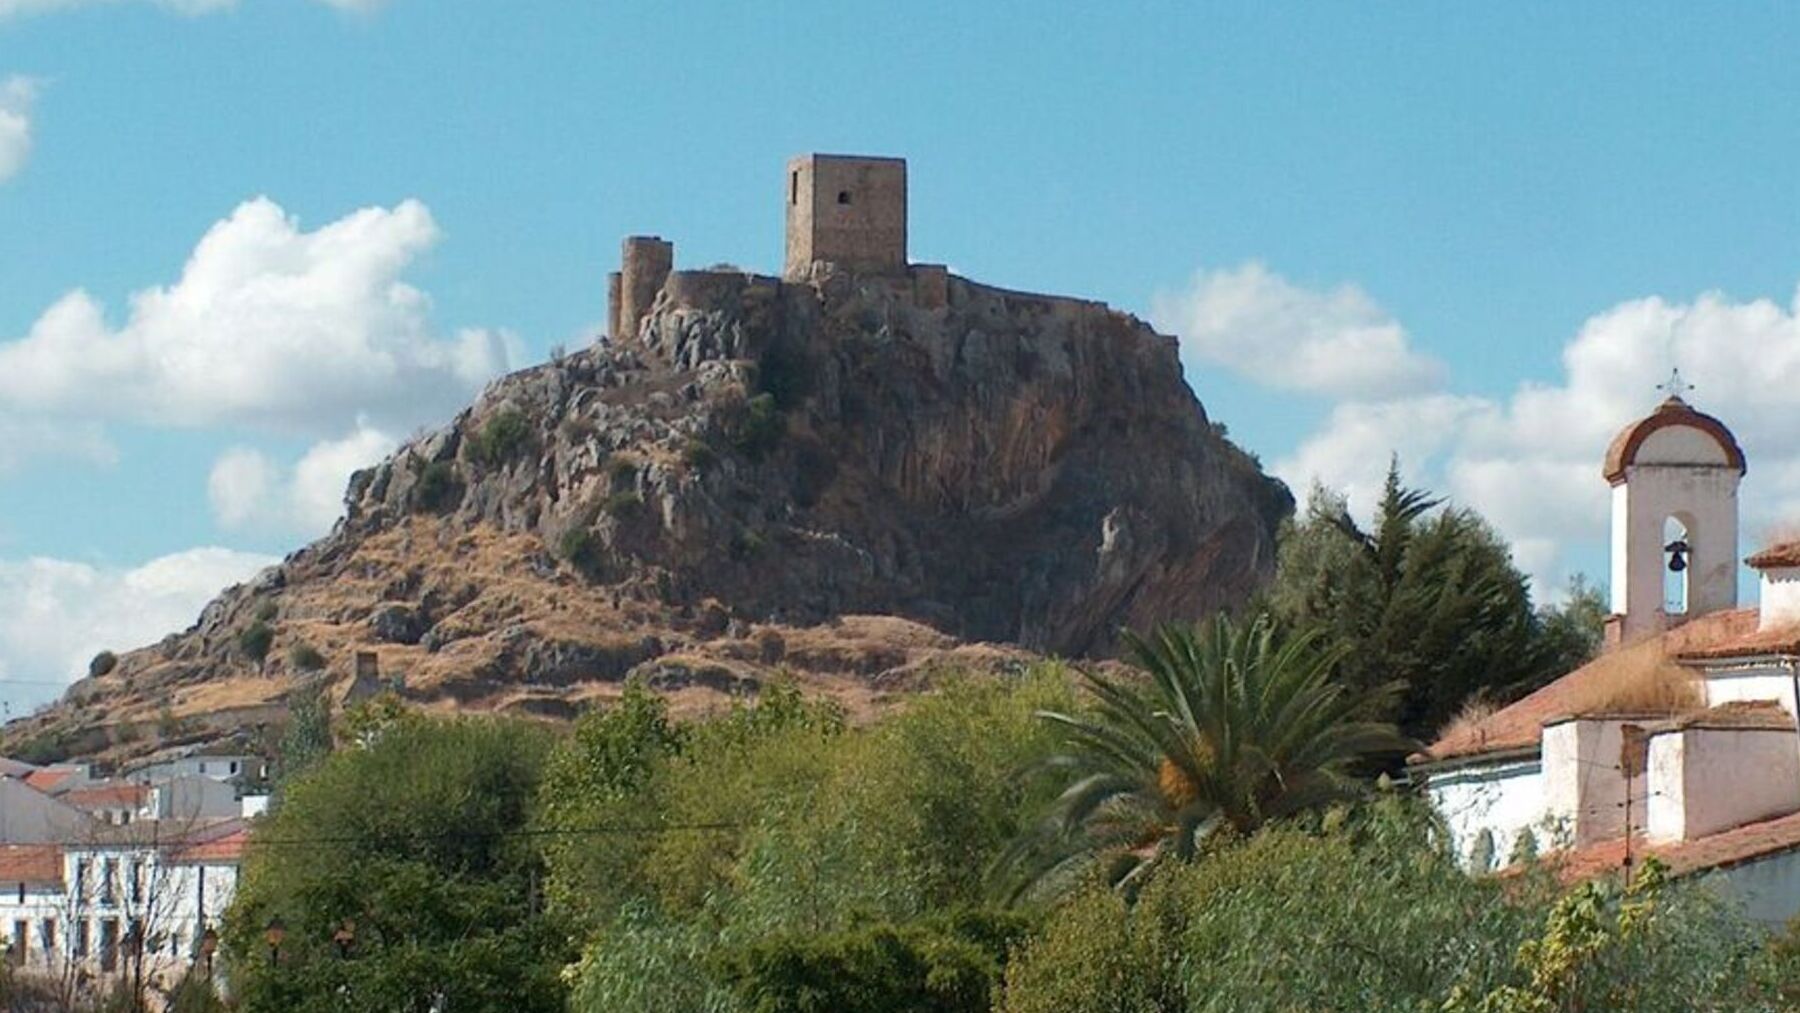 El increíble castillo de España que se ha colado entre los 10 más bonitos según National Geographic